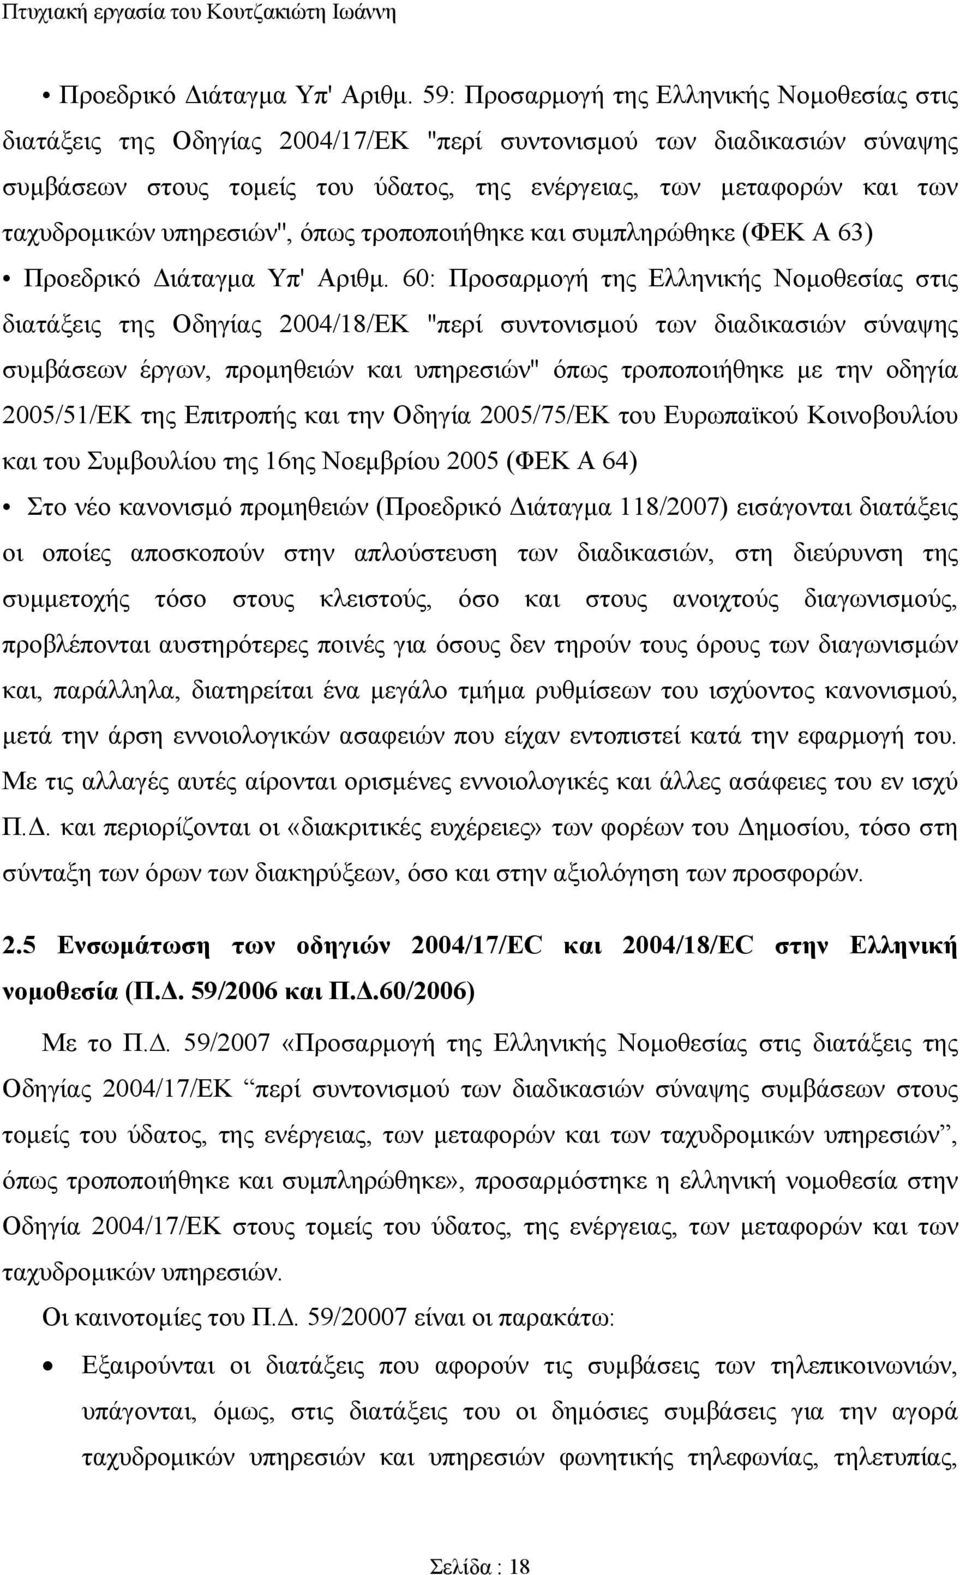 ταχυδρομικών υπηρεσιών'', όπως τροποποιήθηκε και συμπληρώθηκε (ΦΕΚ Α 63)  60: Προσαρμογή της Ελληνικής Νομοθεσίας στις διατάξεις της Οδηγίας 2004/18/ΕΚ ''περί συντονισμού των διαδικασιών σύναψης